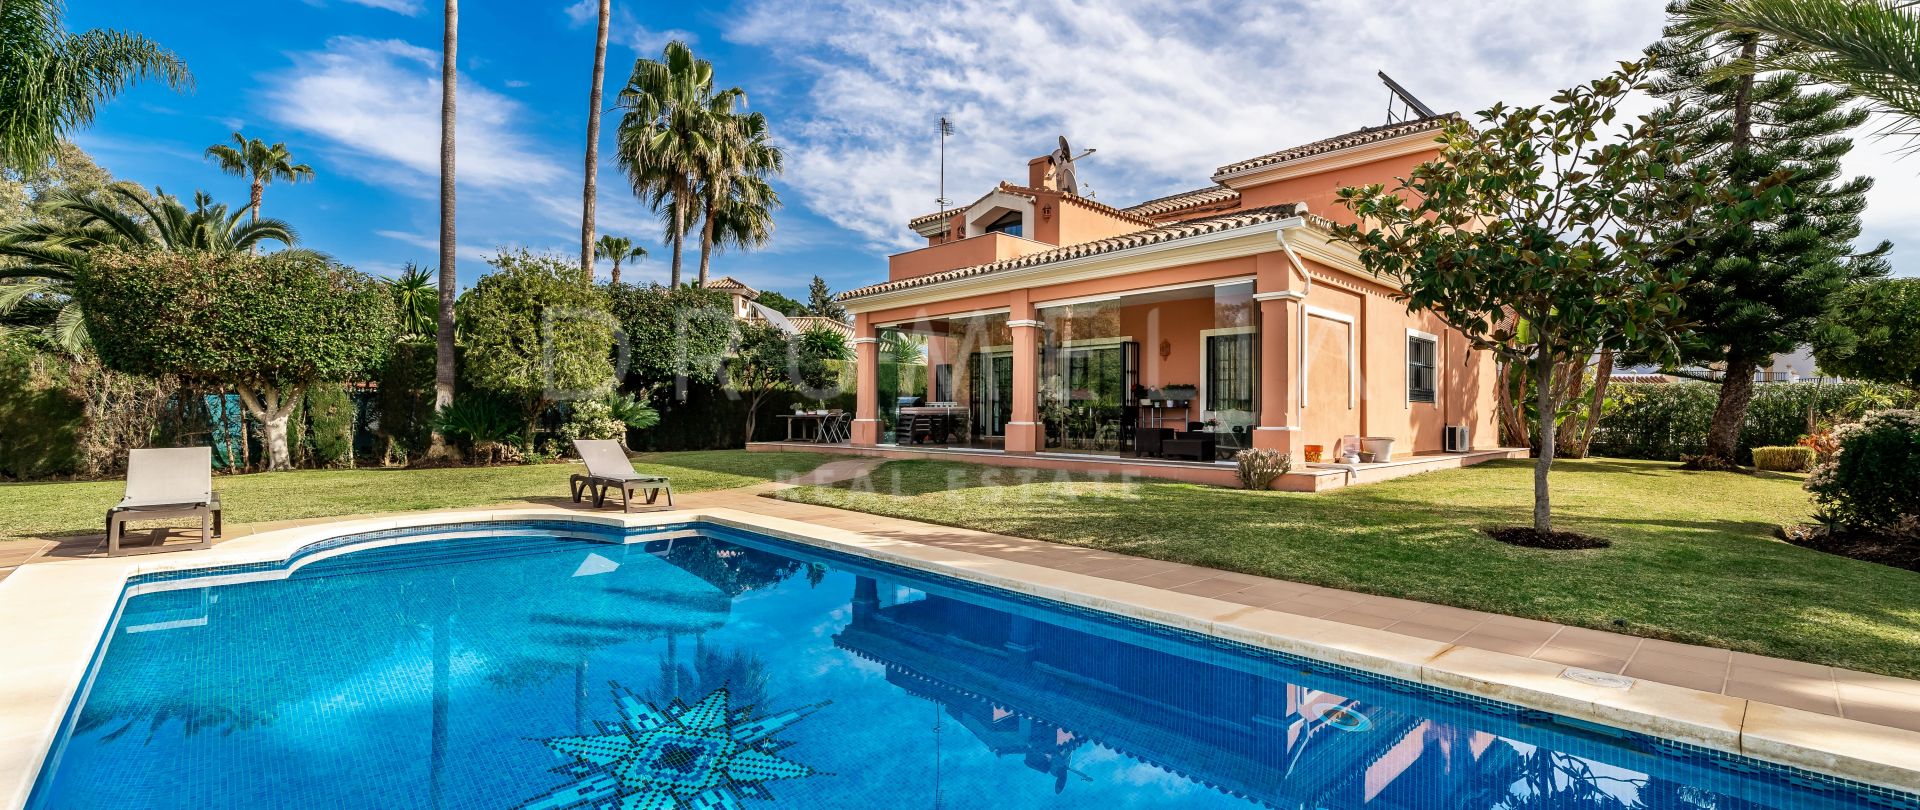 Mooie luxe villa in mediterrane stijl in het mooie Atalaya, Estepona gebied